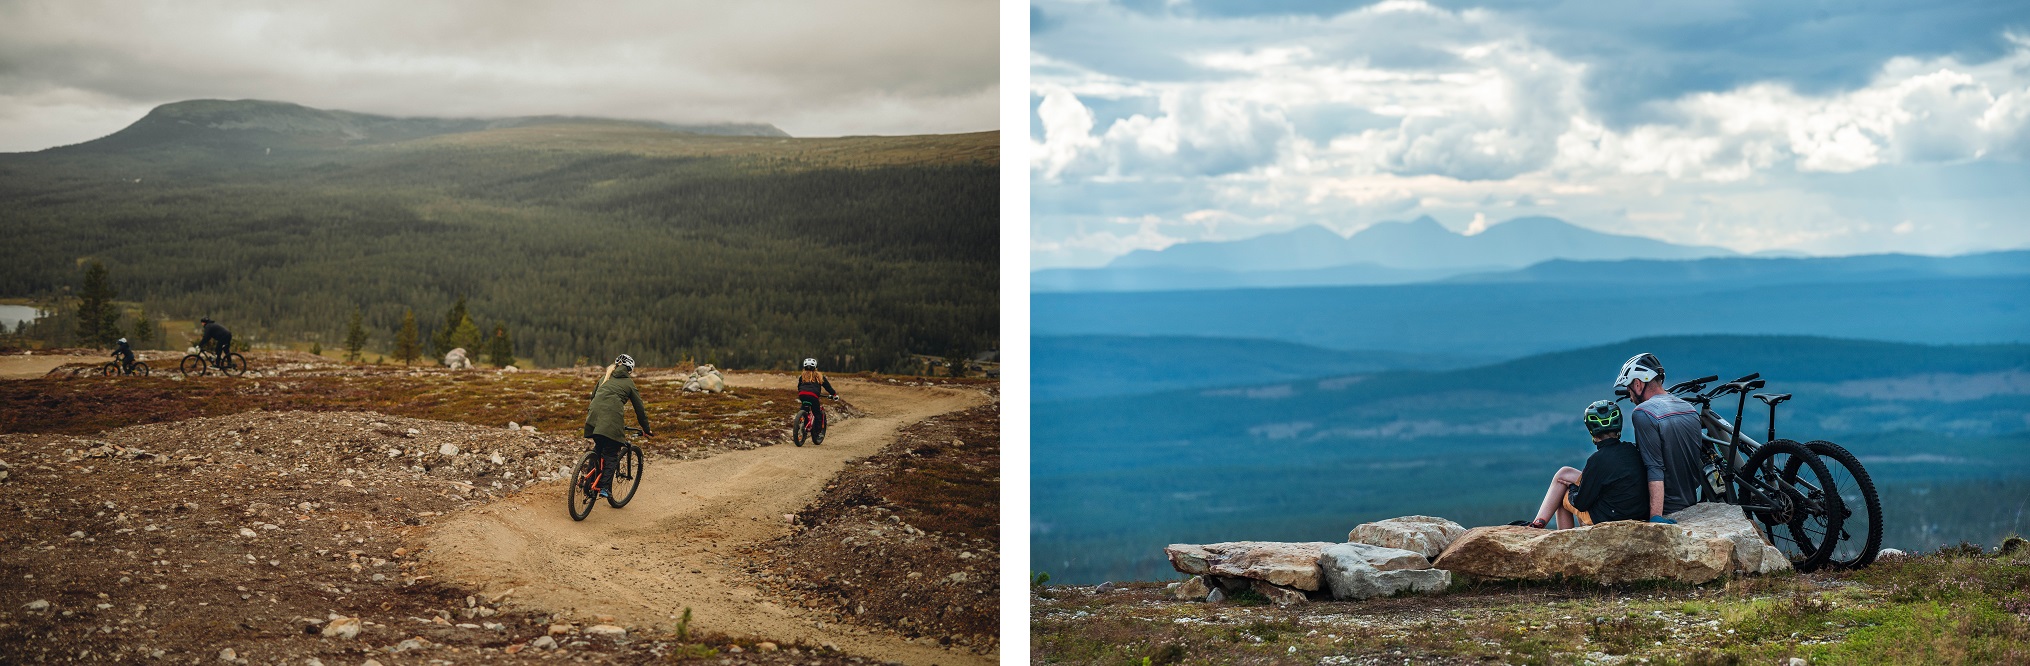 Collage van fietsende gezinnen in een bergachtig landschap in Idre Fjäll.